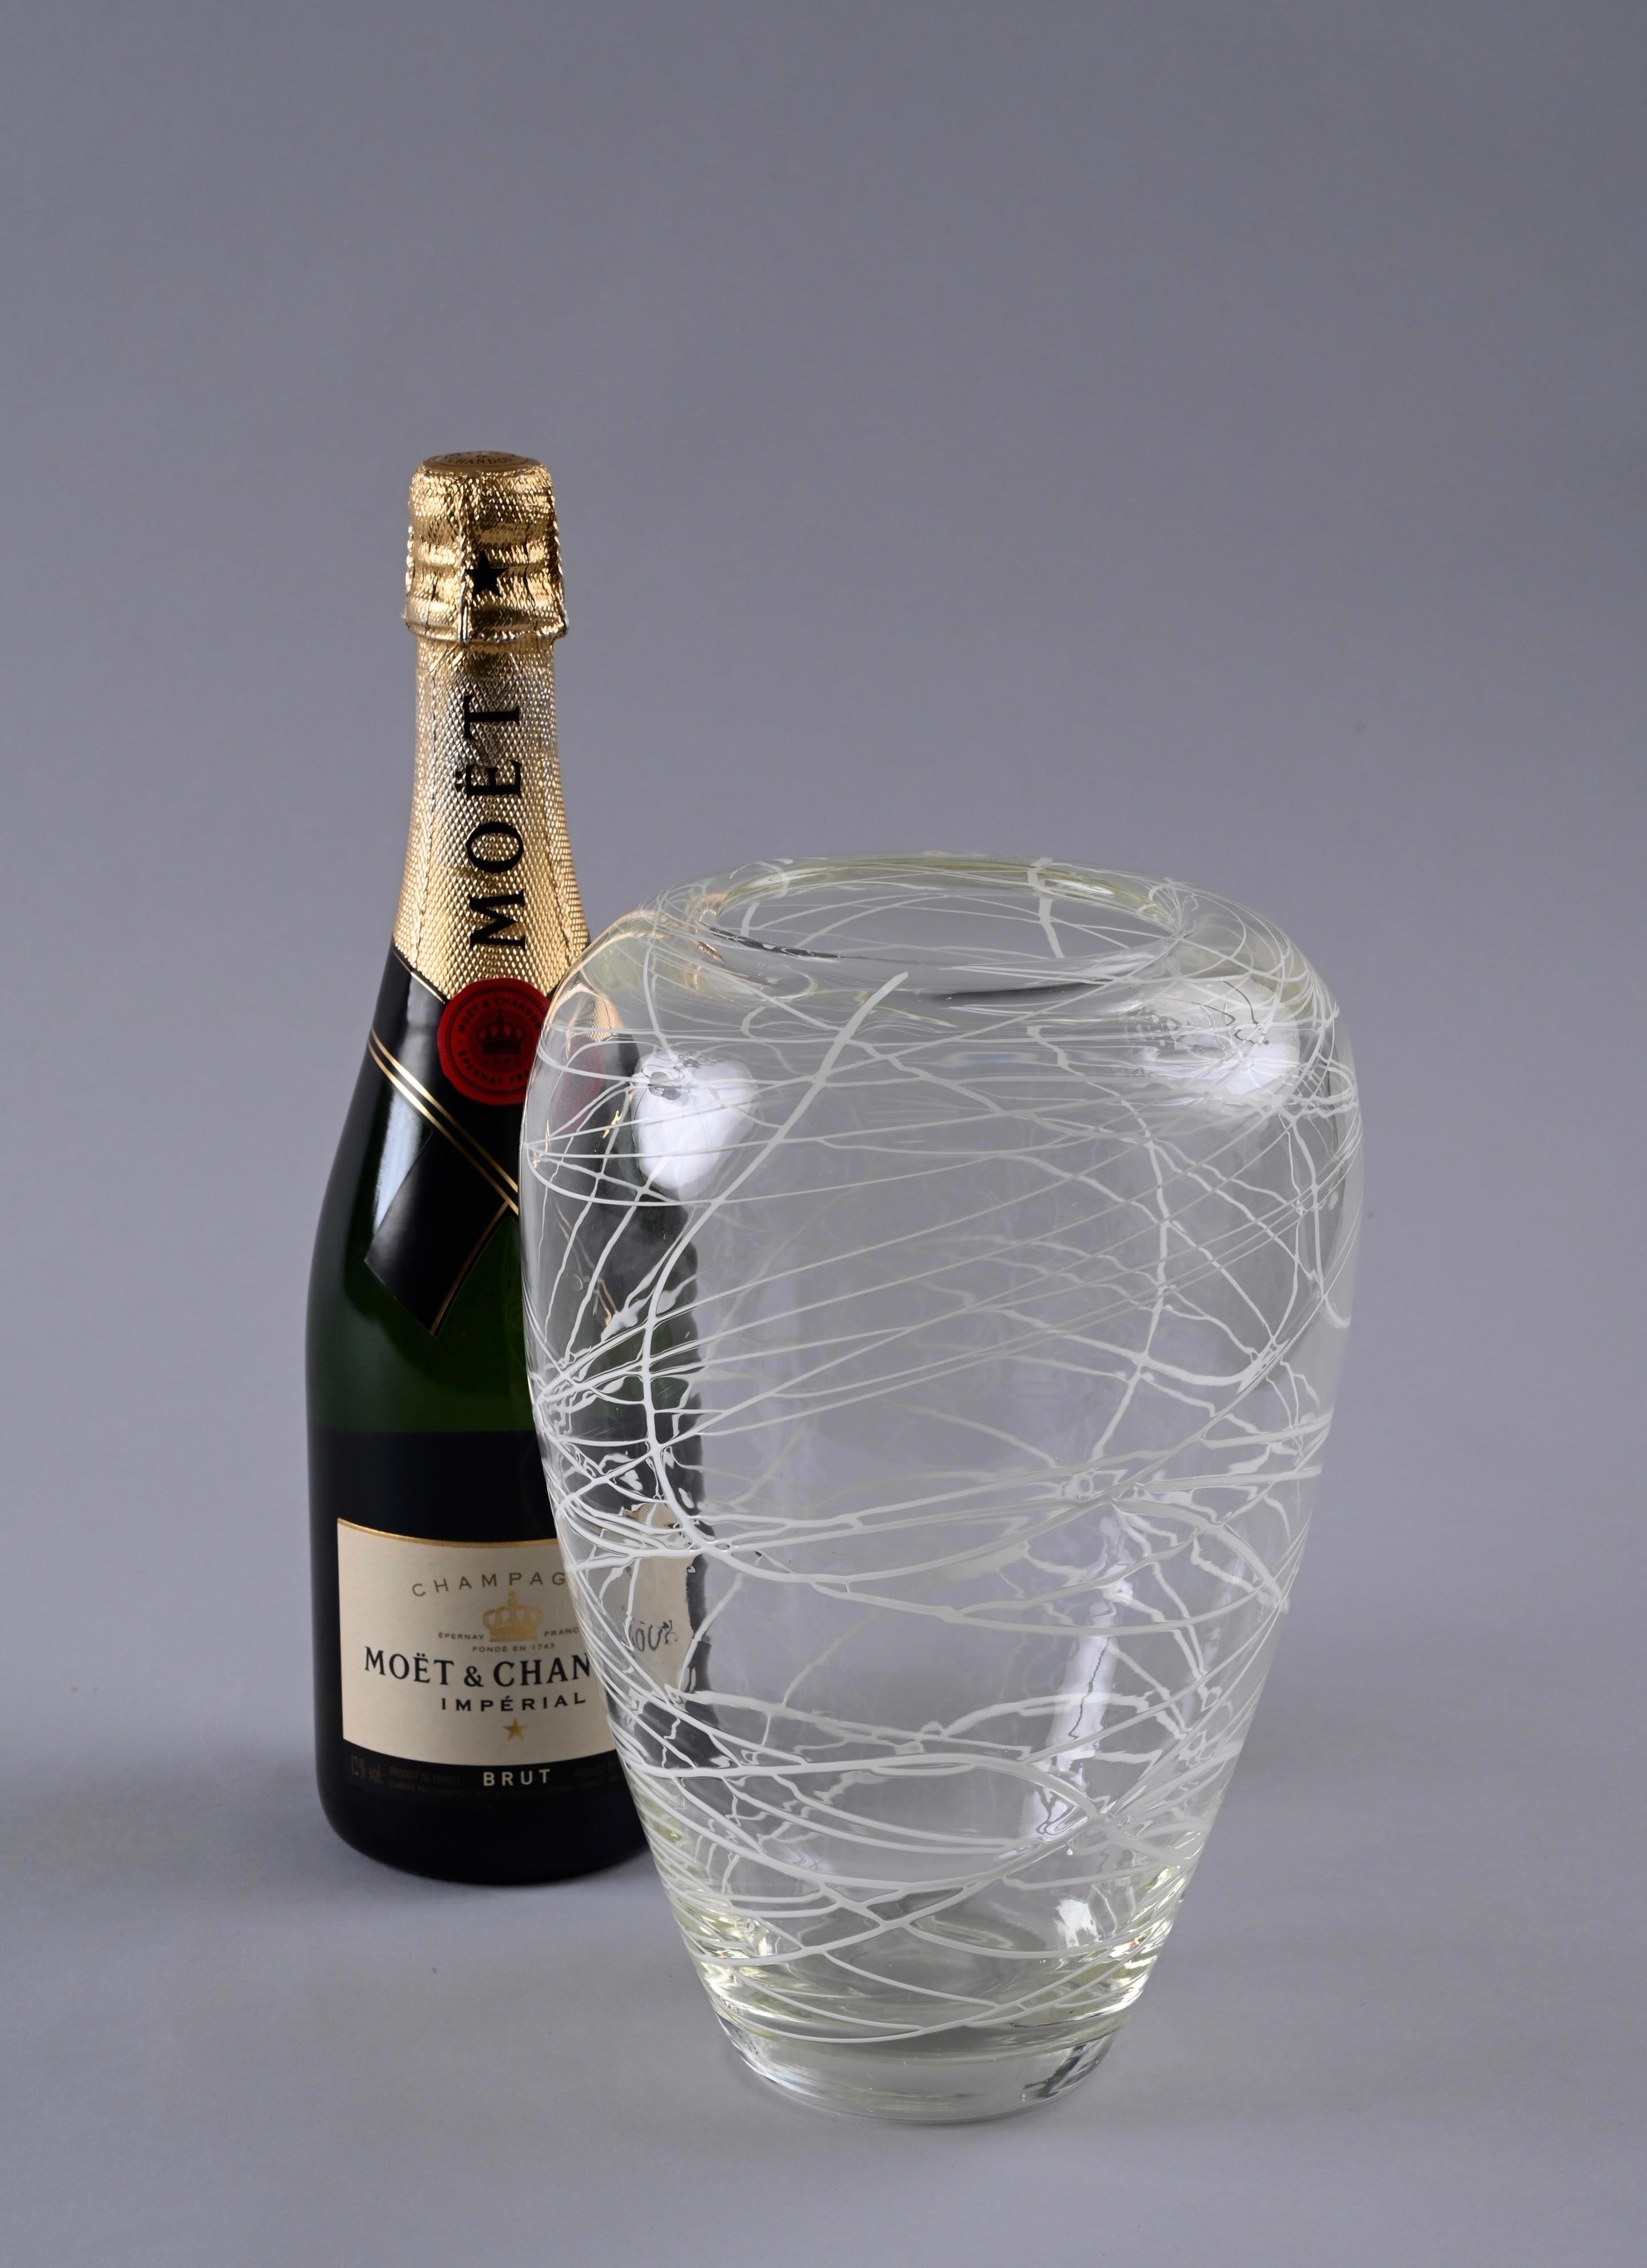 Fantastische dekorative Vase oder Blumenvase aus Murano-Kristallglas. Dieses charmante Objekt wurde in den 1970er Jahren in Murano, Italien, hergestellt und ist eindeutig im Stil von Carlo Scarpa gehalten.

Eine Vase mit unglaublichem Charme. Das